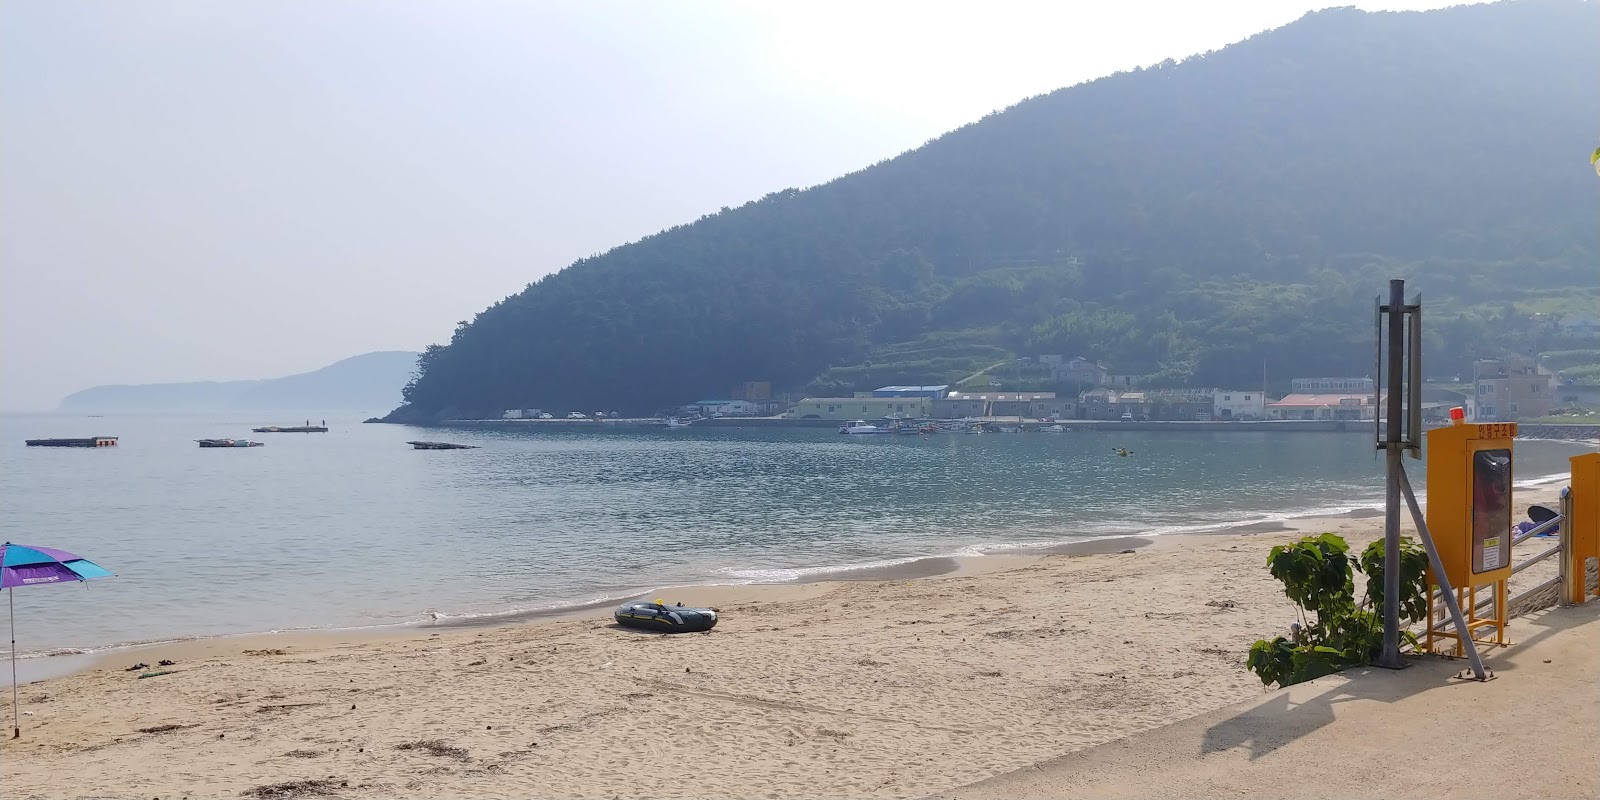 Foto de Deokwon Beach - lugar popular entre los conocedores del relax